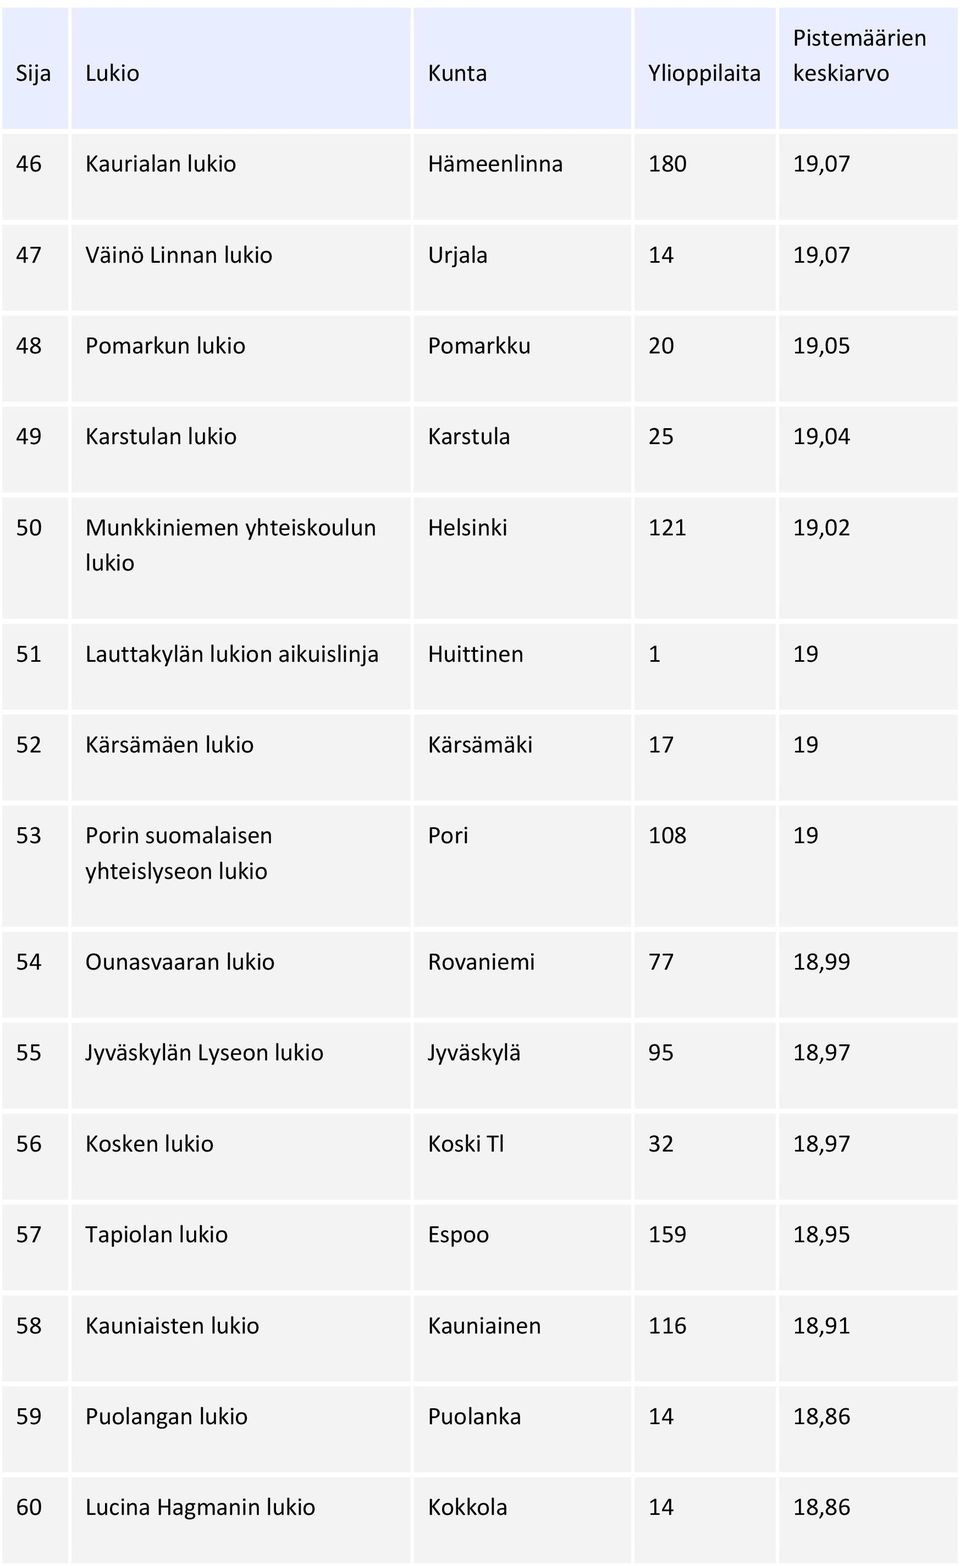 suomalaisen yhteislyseon lukio Pori 108 19 54 Ounasvaaran lukio Rovaniemi 77 18,99 55 Jyväskylän Lyseon lukio Jyväskylä 95 18,97 56 Kosken lukio Koski Tl